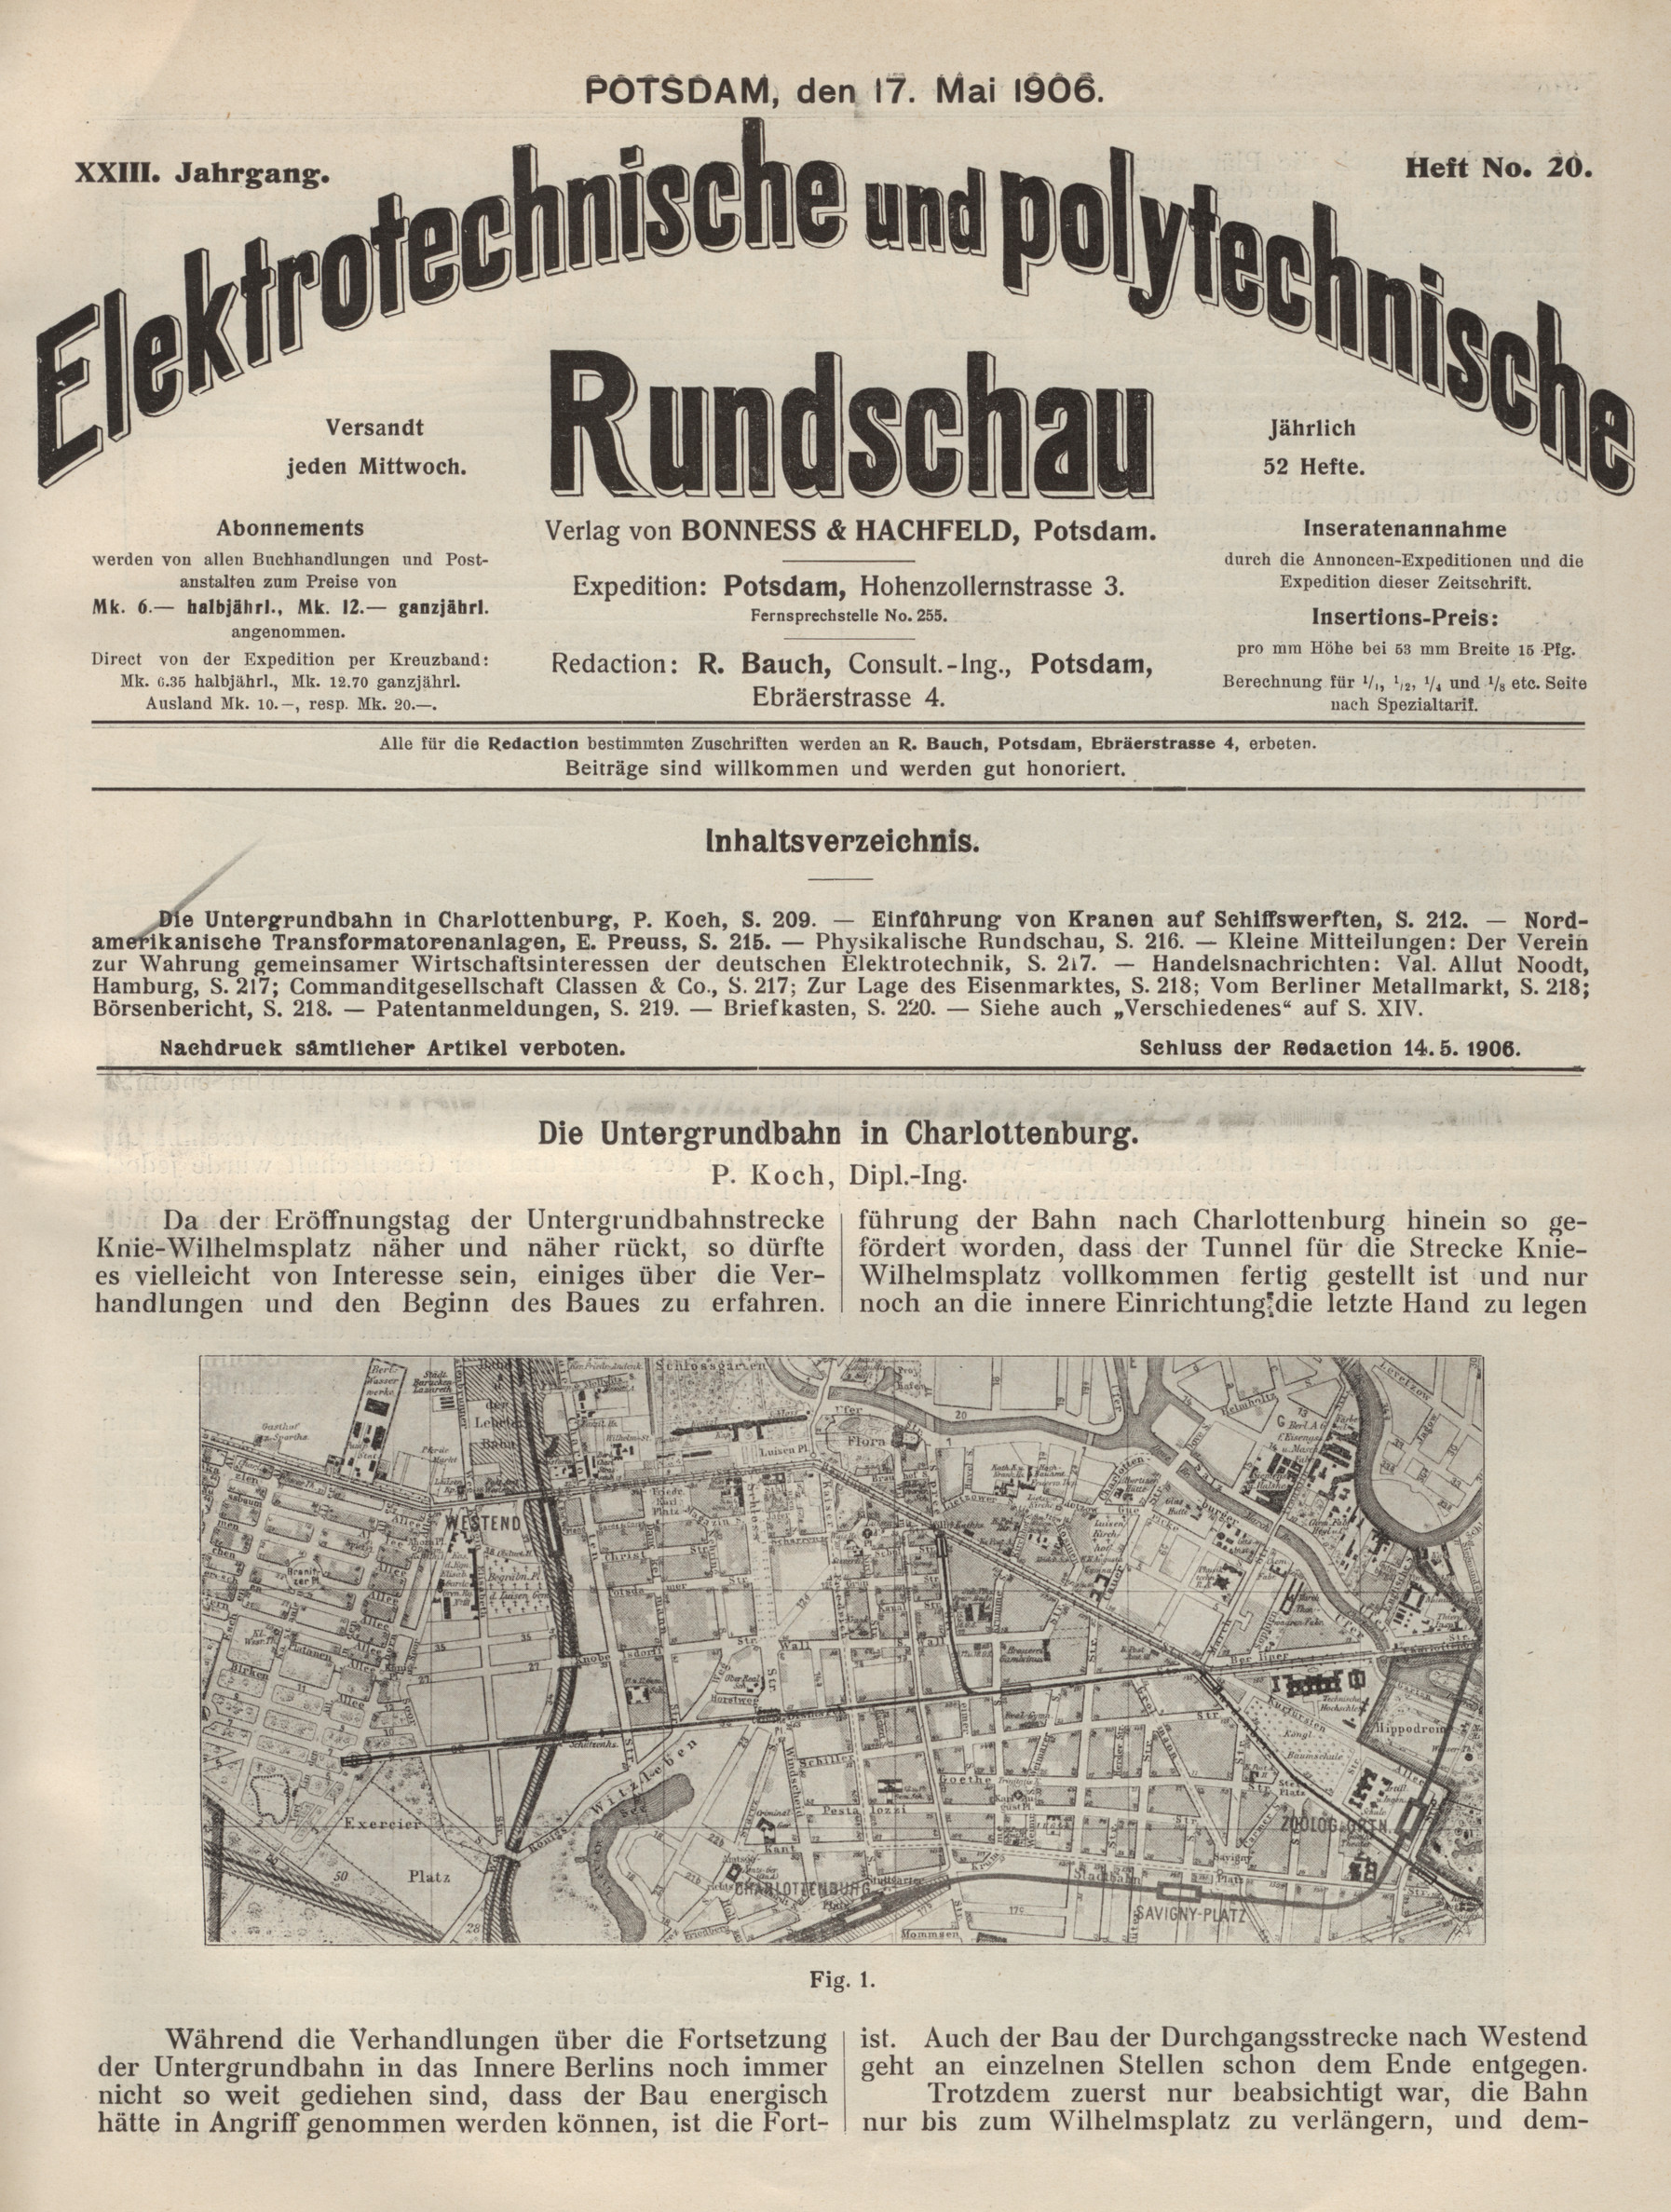 Elektrotechnische und polytechnische Rundschau, XXIII. Jahrgang, Heft No. 20